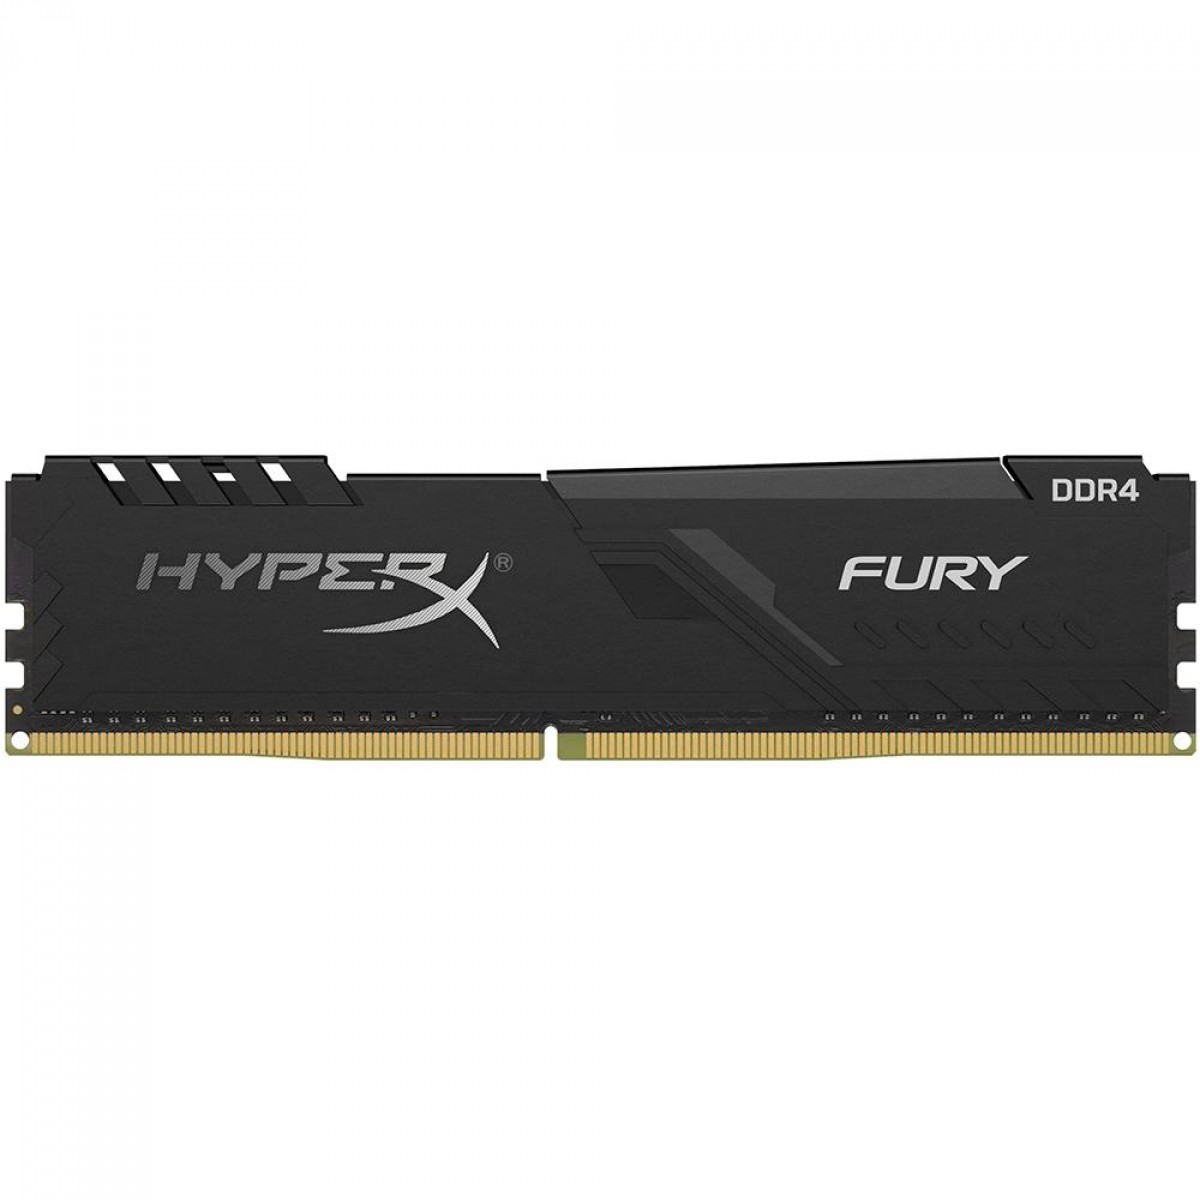 Memória DDR4 HyperX Fury, 4GB, 2400MHz, Black, HX424C15FB3/4